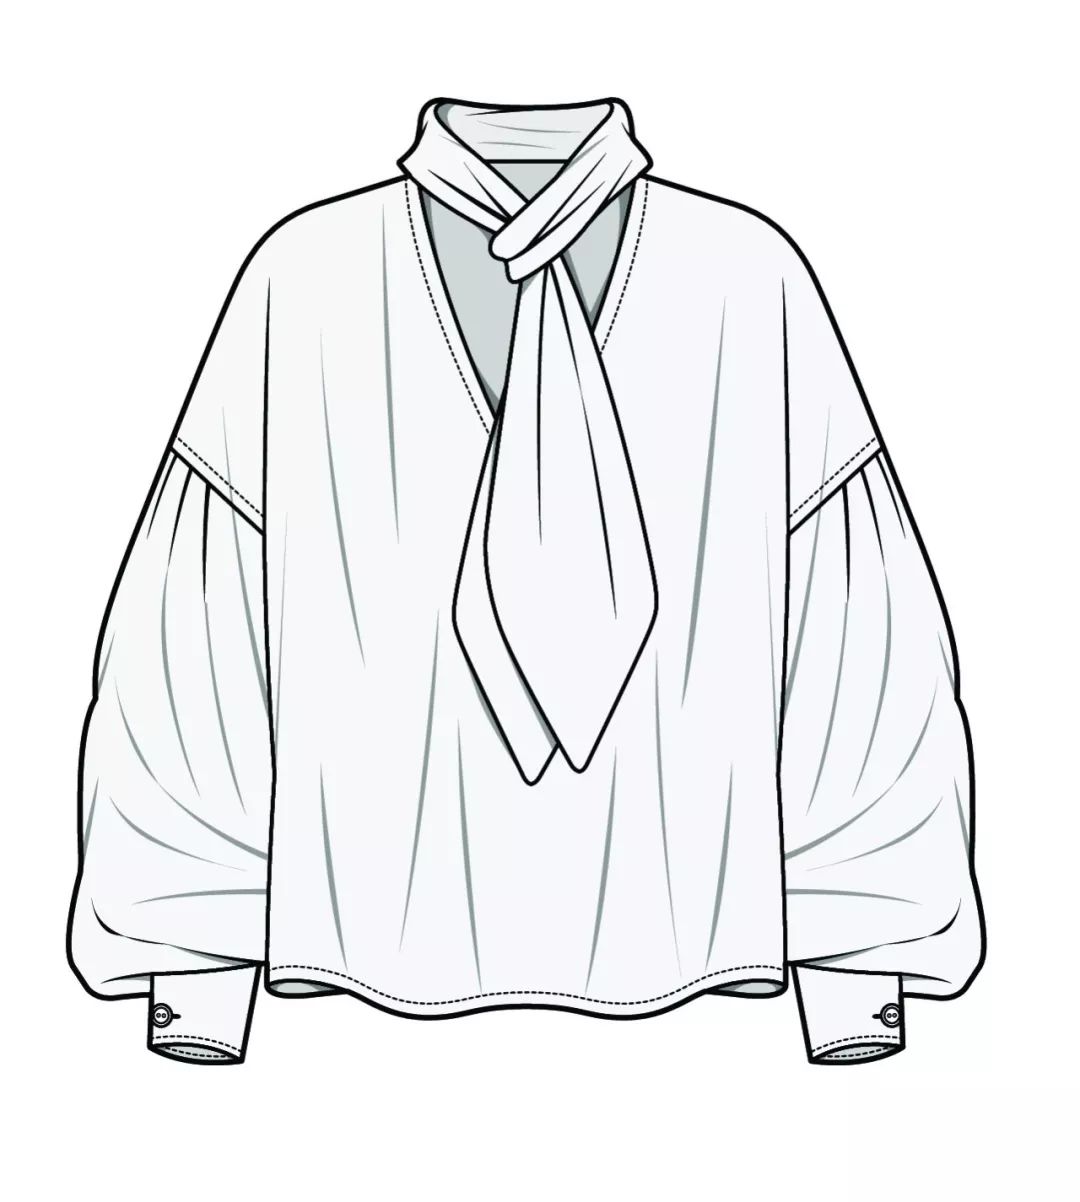 水手风女士衬衫的特点是长袖和落肩设计,它将从时尚单品变为核心单品